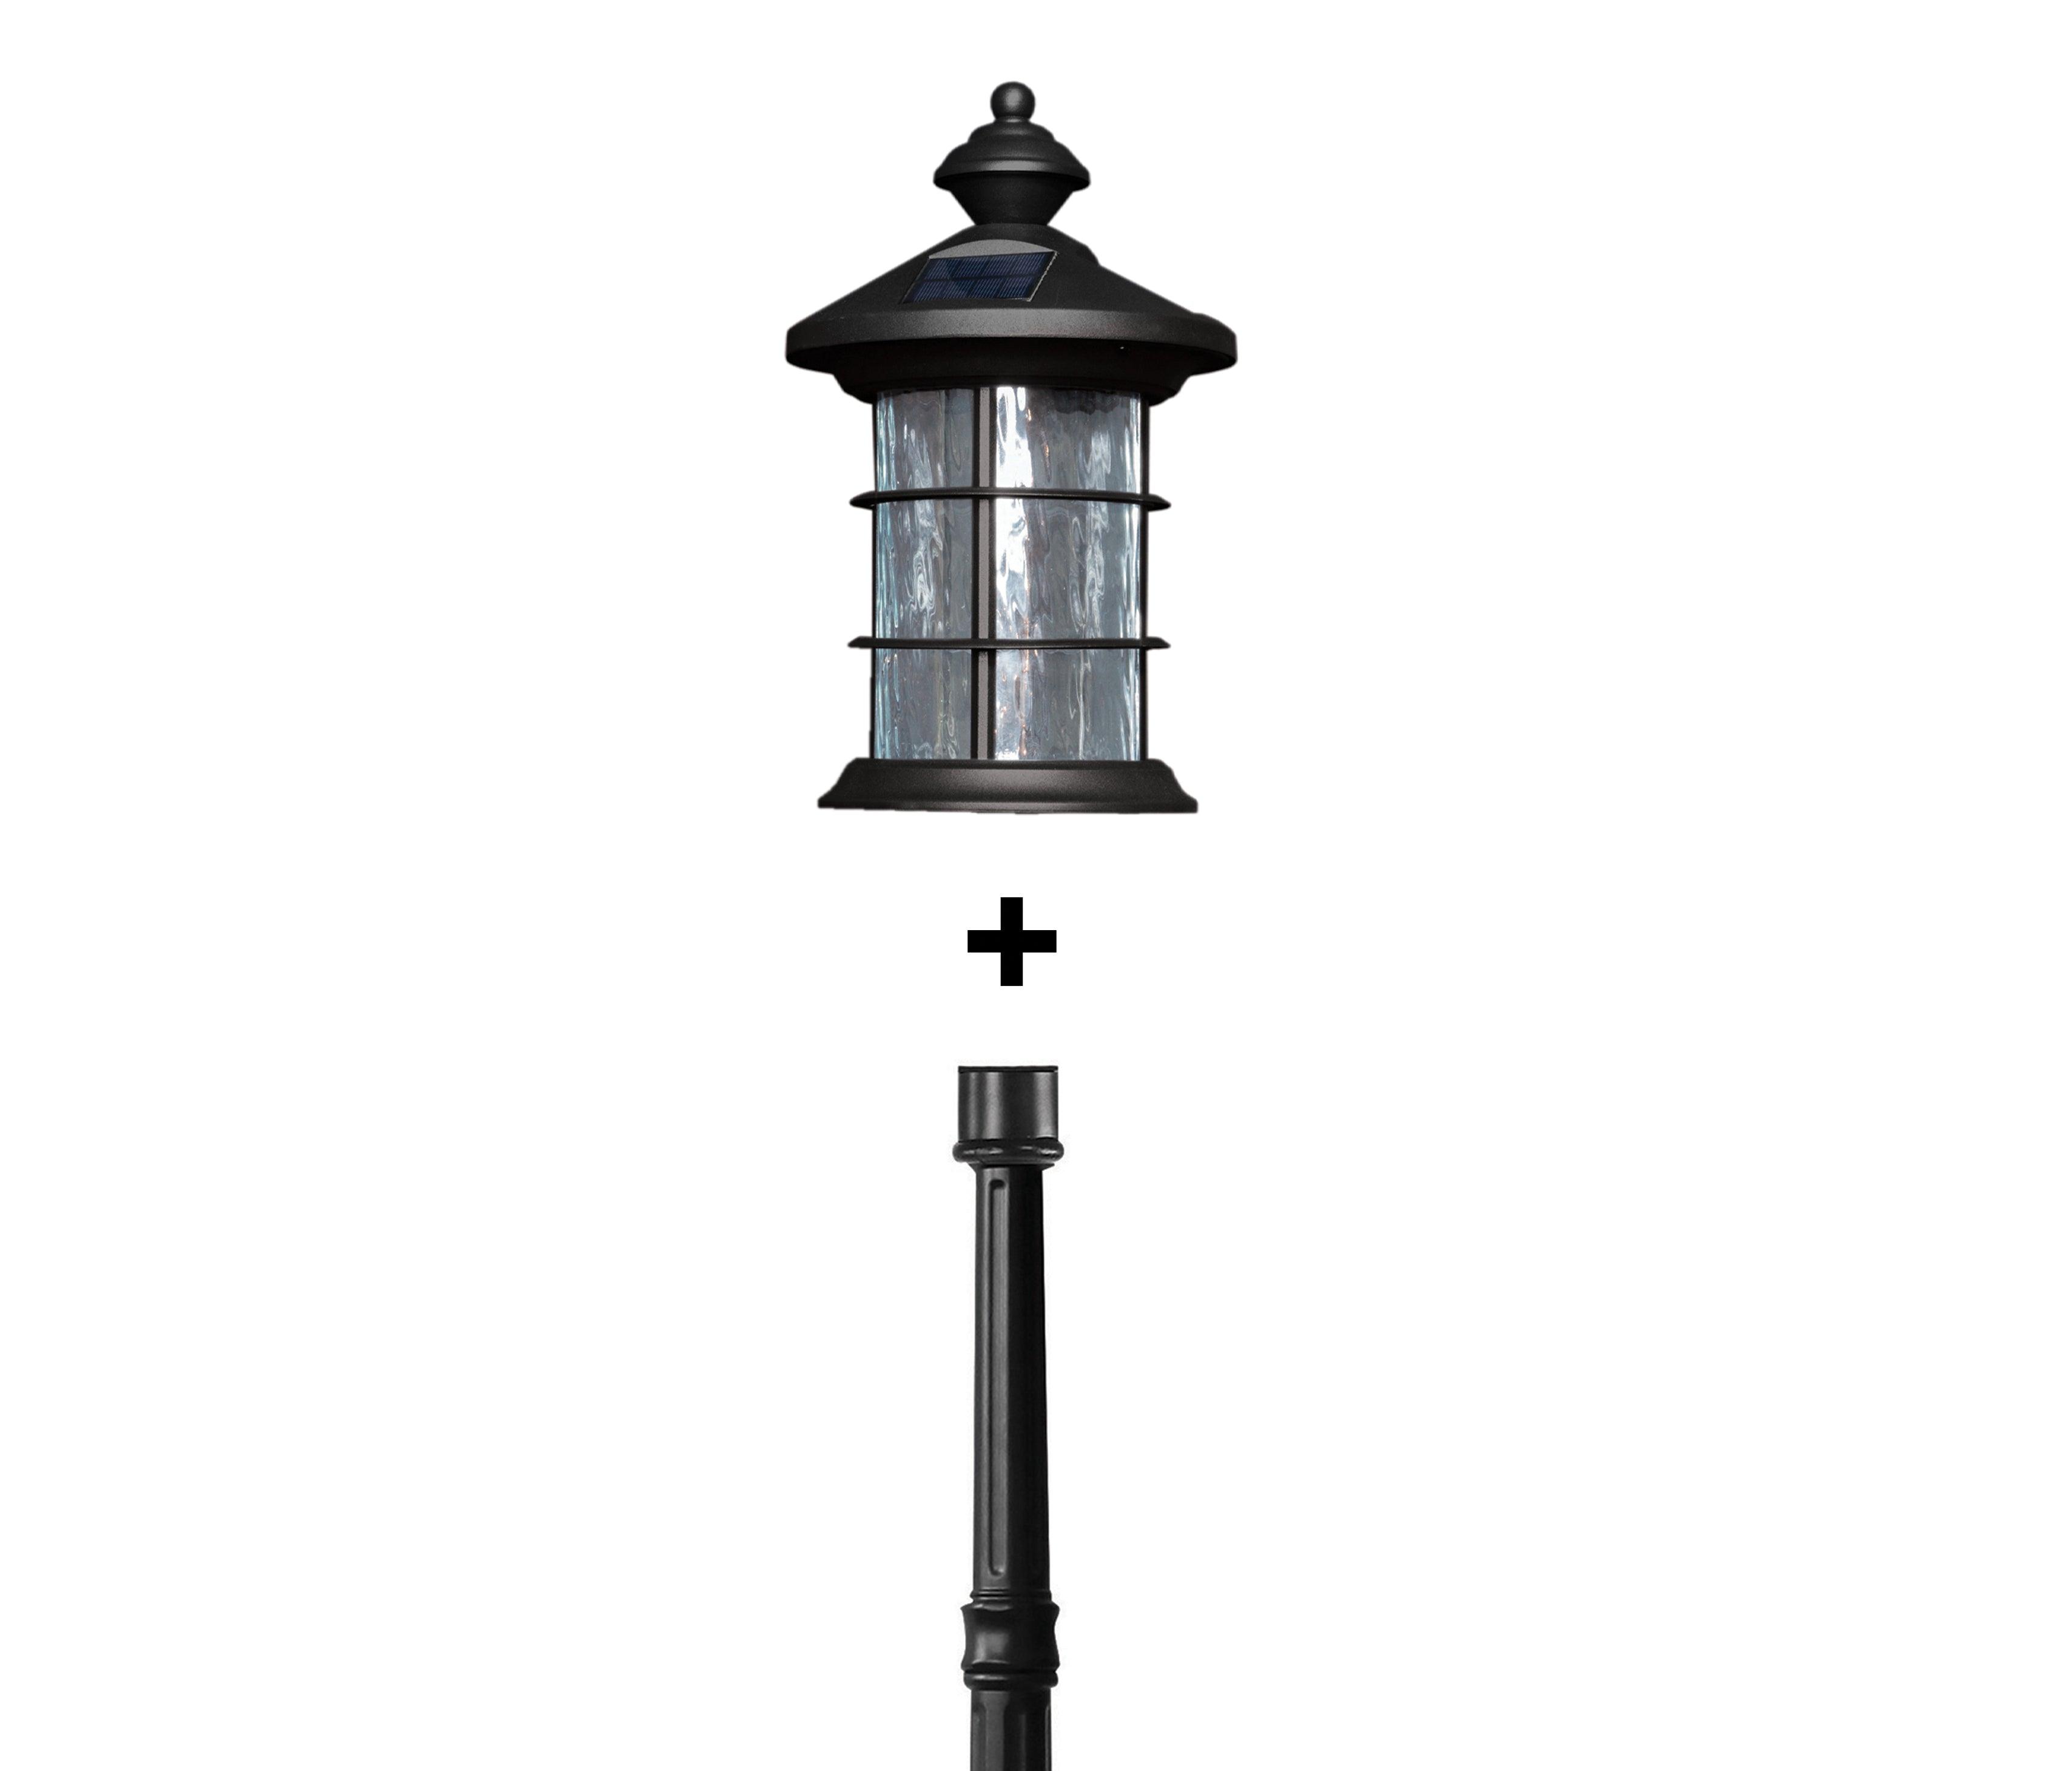 Black Aluminum Hampton Solar Lamp With Lamp Post Base - Classy Caps Mfg. Inc.